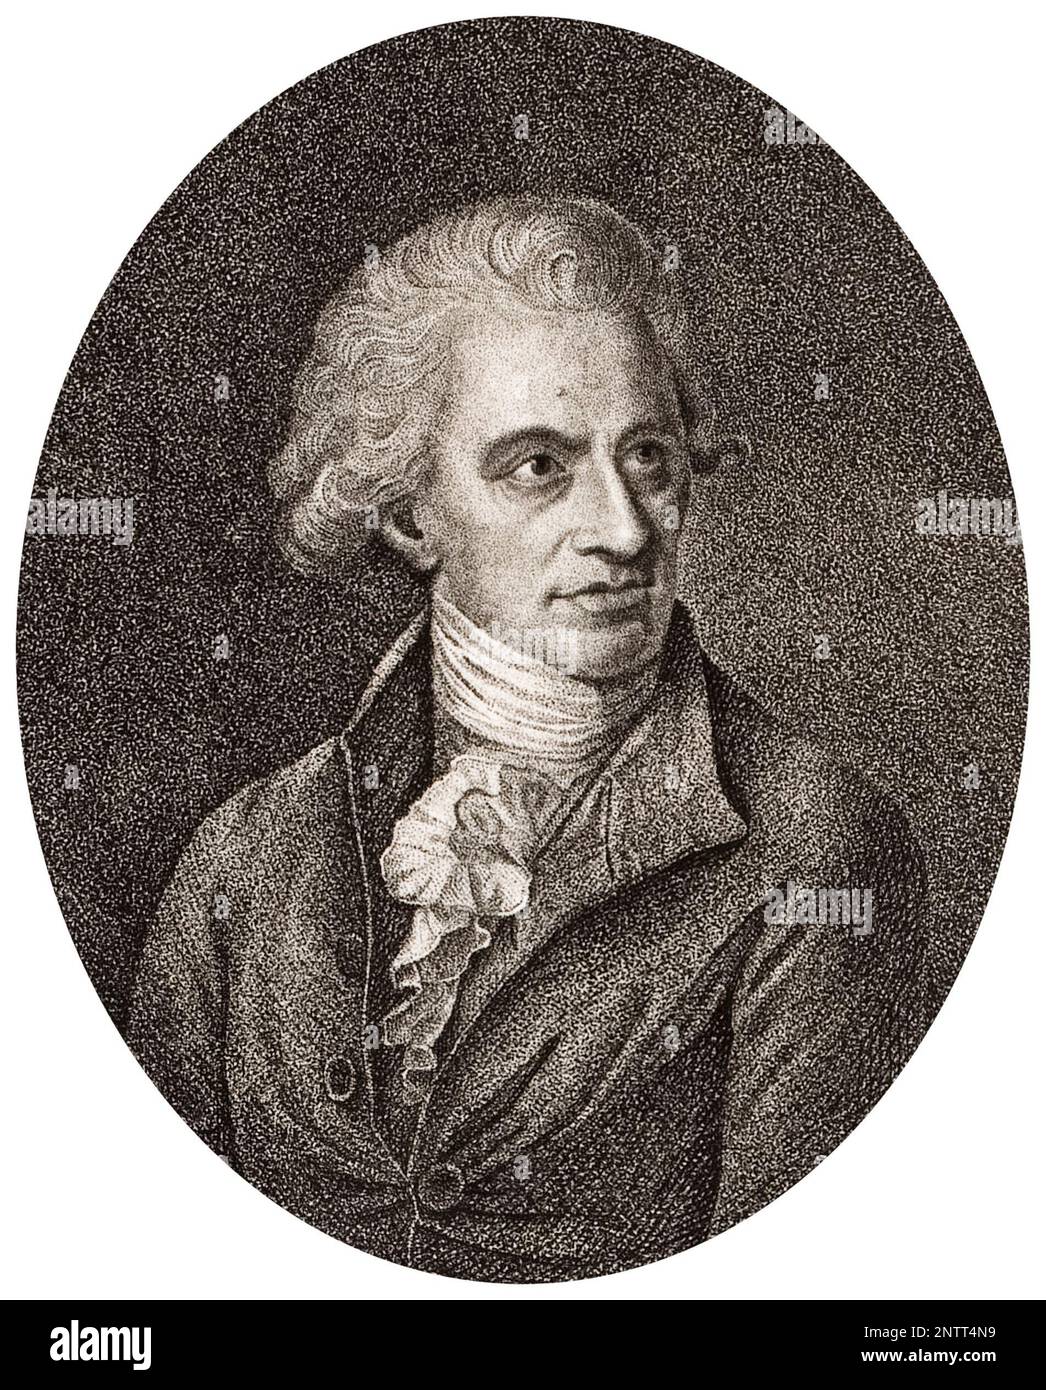 Sir William Herschel (1738-1822), deutscher britischer Astronome und Komponist, Porträtgravierung von Johann Christian Ernst Müller, 1776-1824 Stockfoto